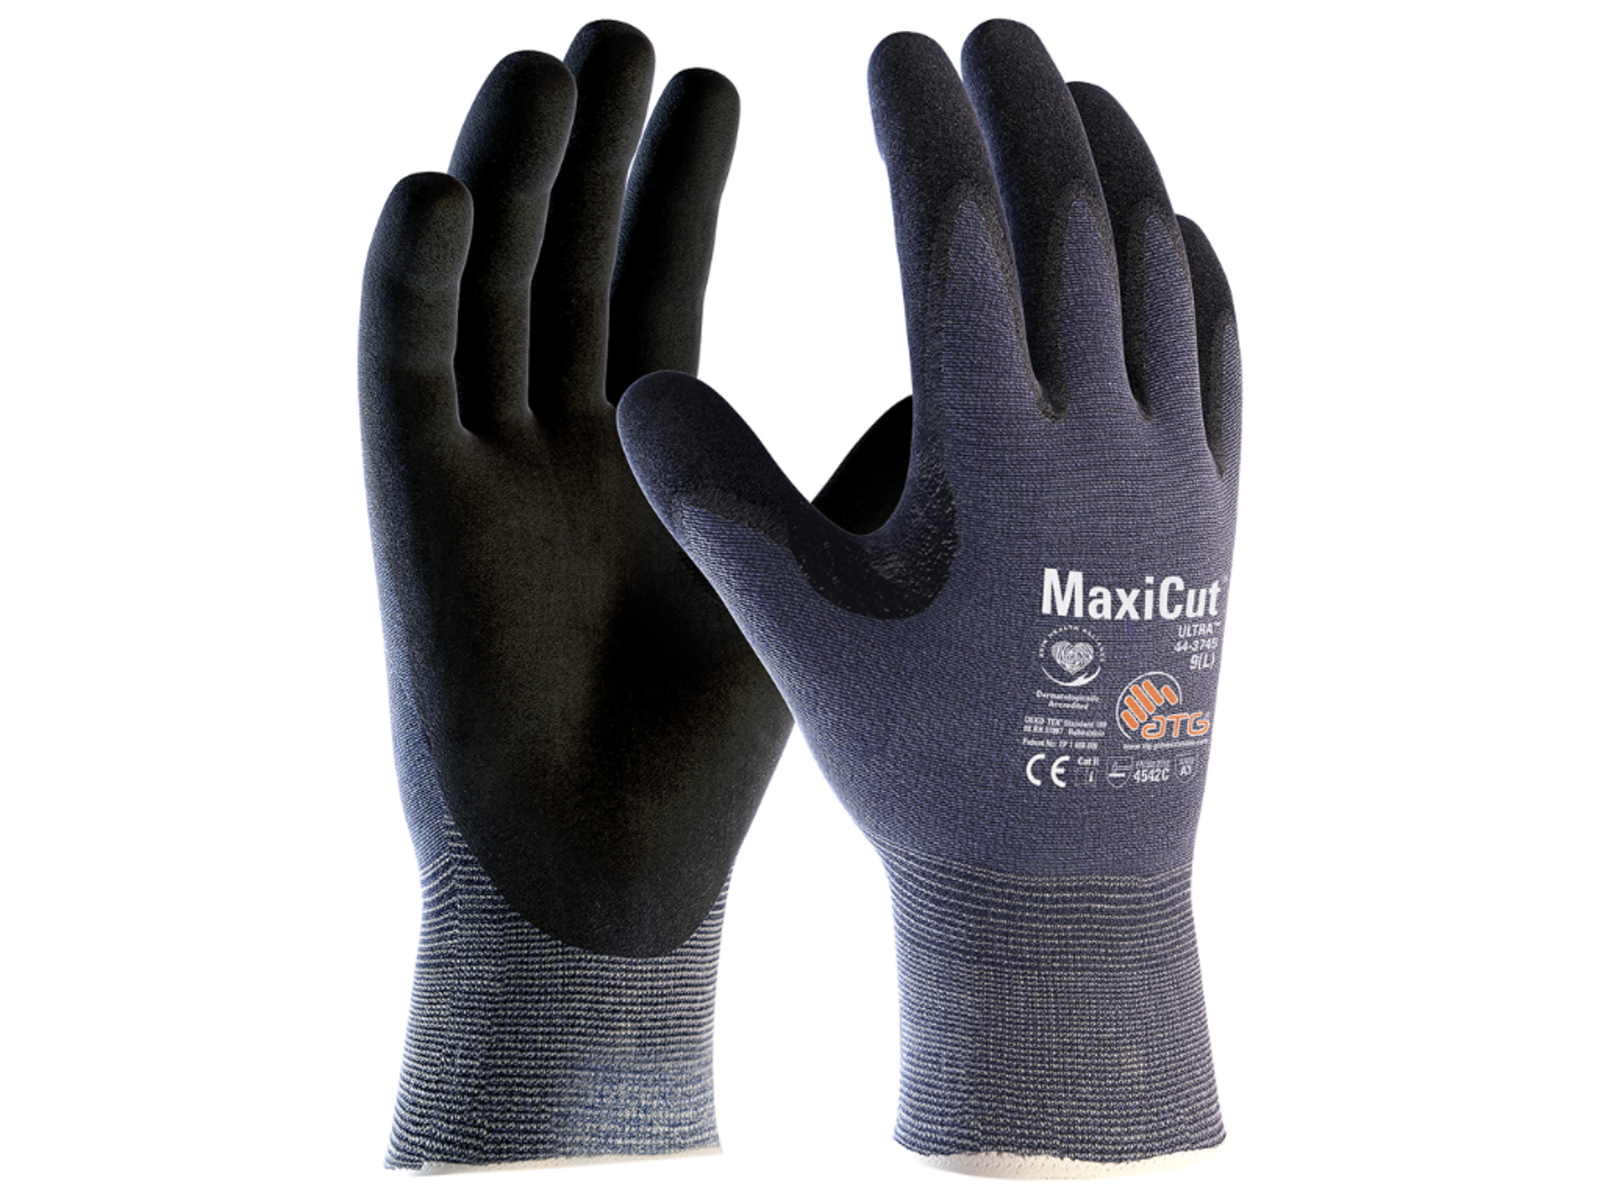 Protiporézne rukavice ATG MaxiCut Ultra 44-3745 - veľkosť: 10/XL, farba: modrá